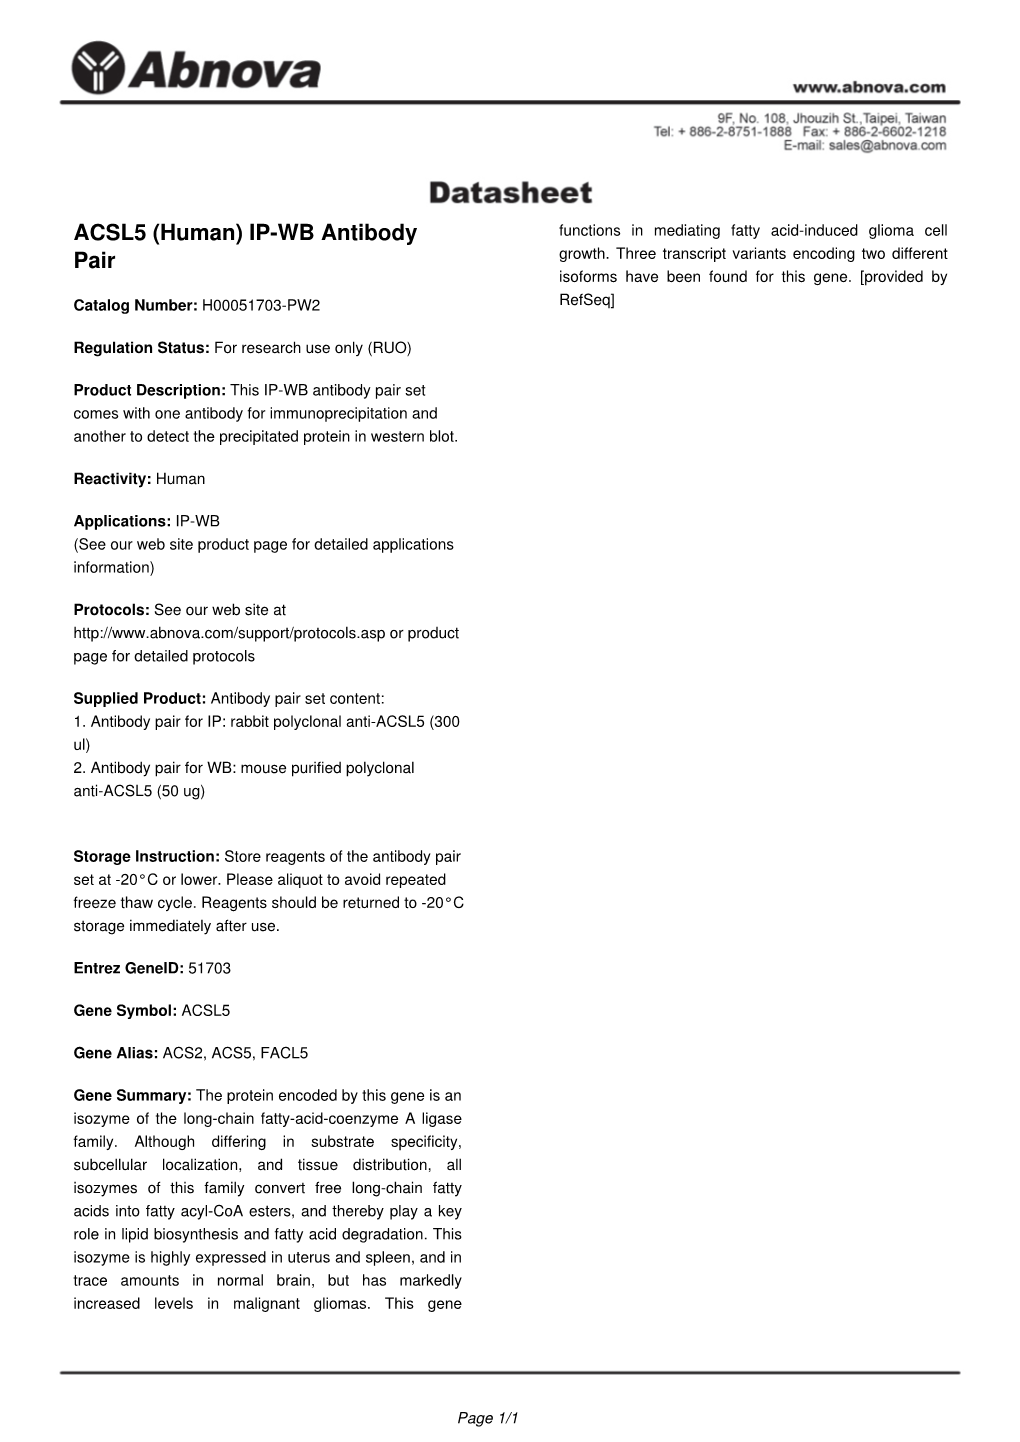 ACSL5 (Human) IP-WB Antibody Pair